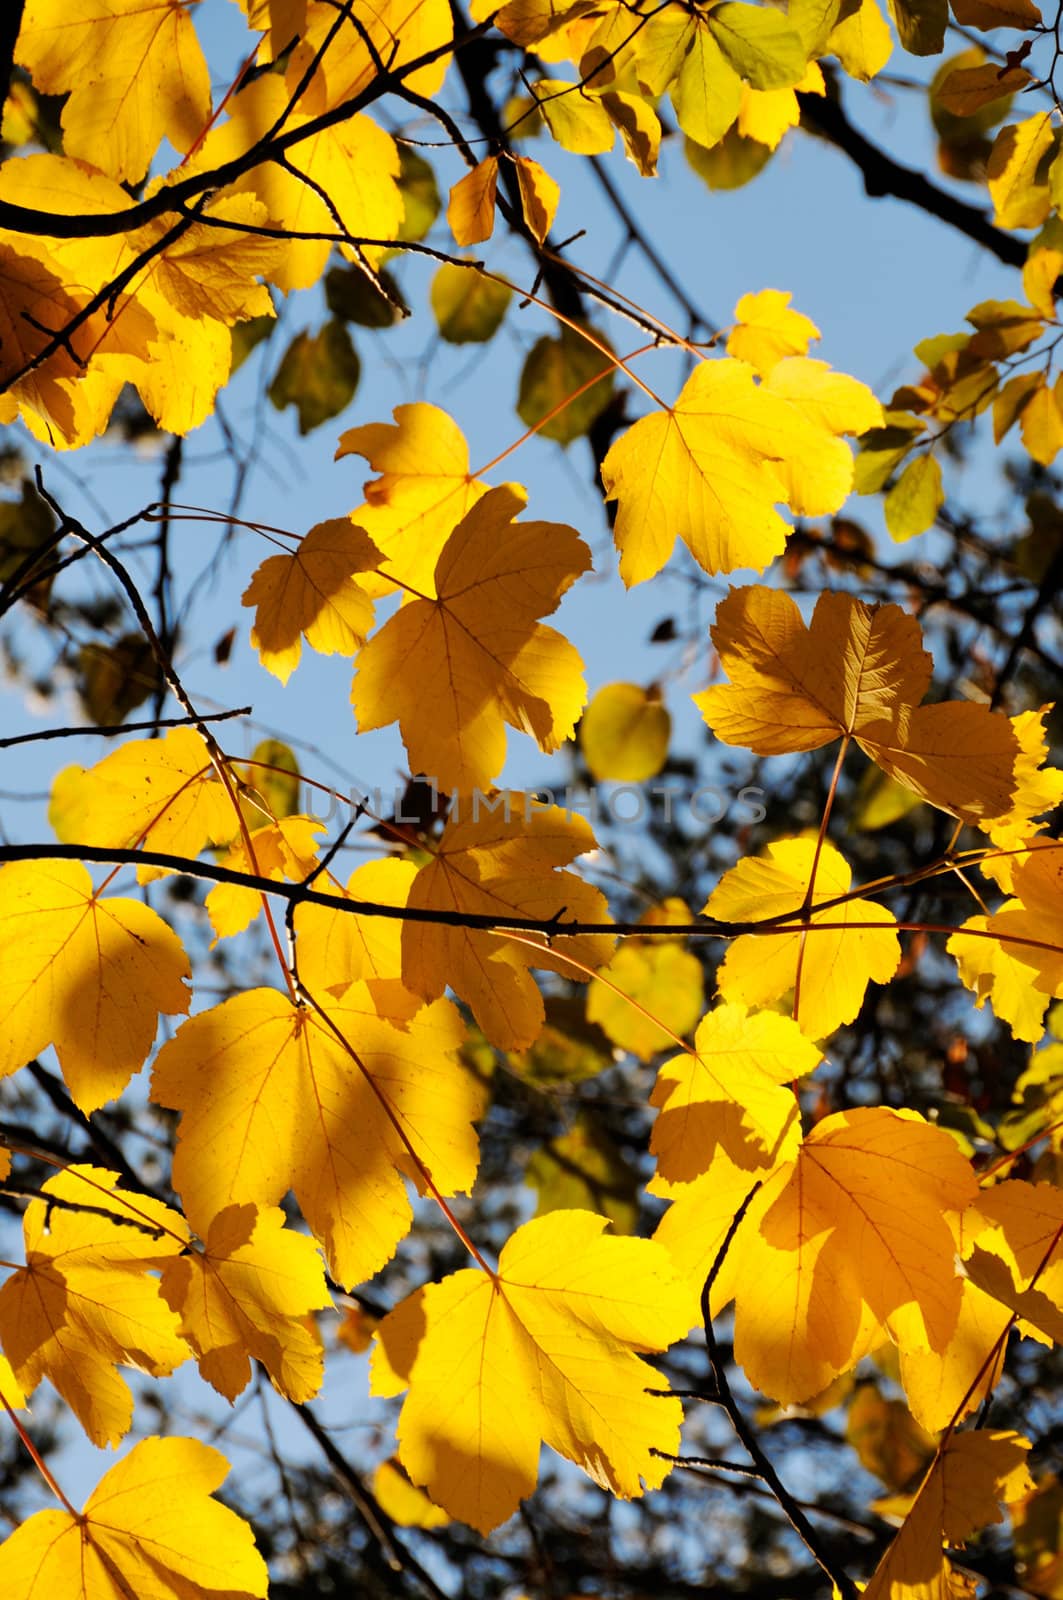 Autumn leaves by Sevaljevic